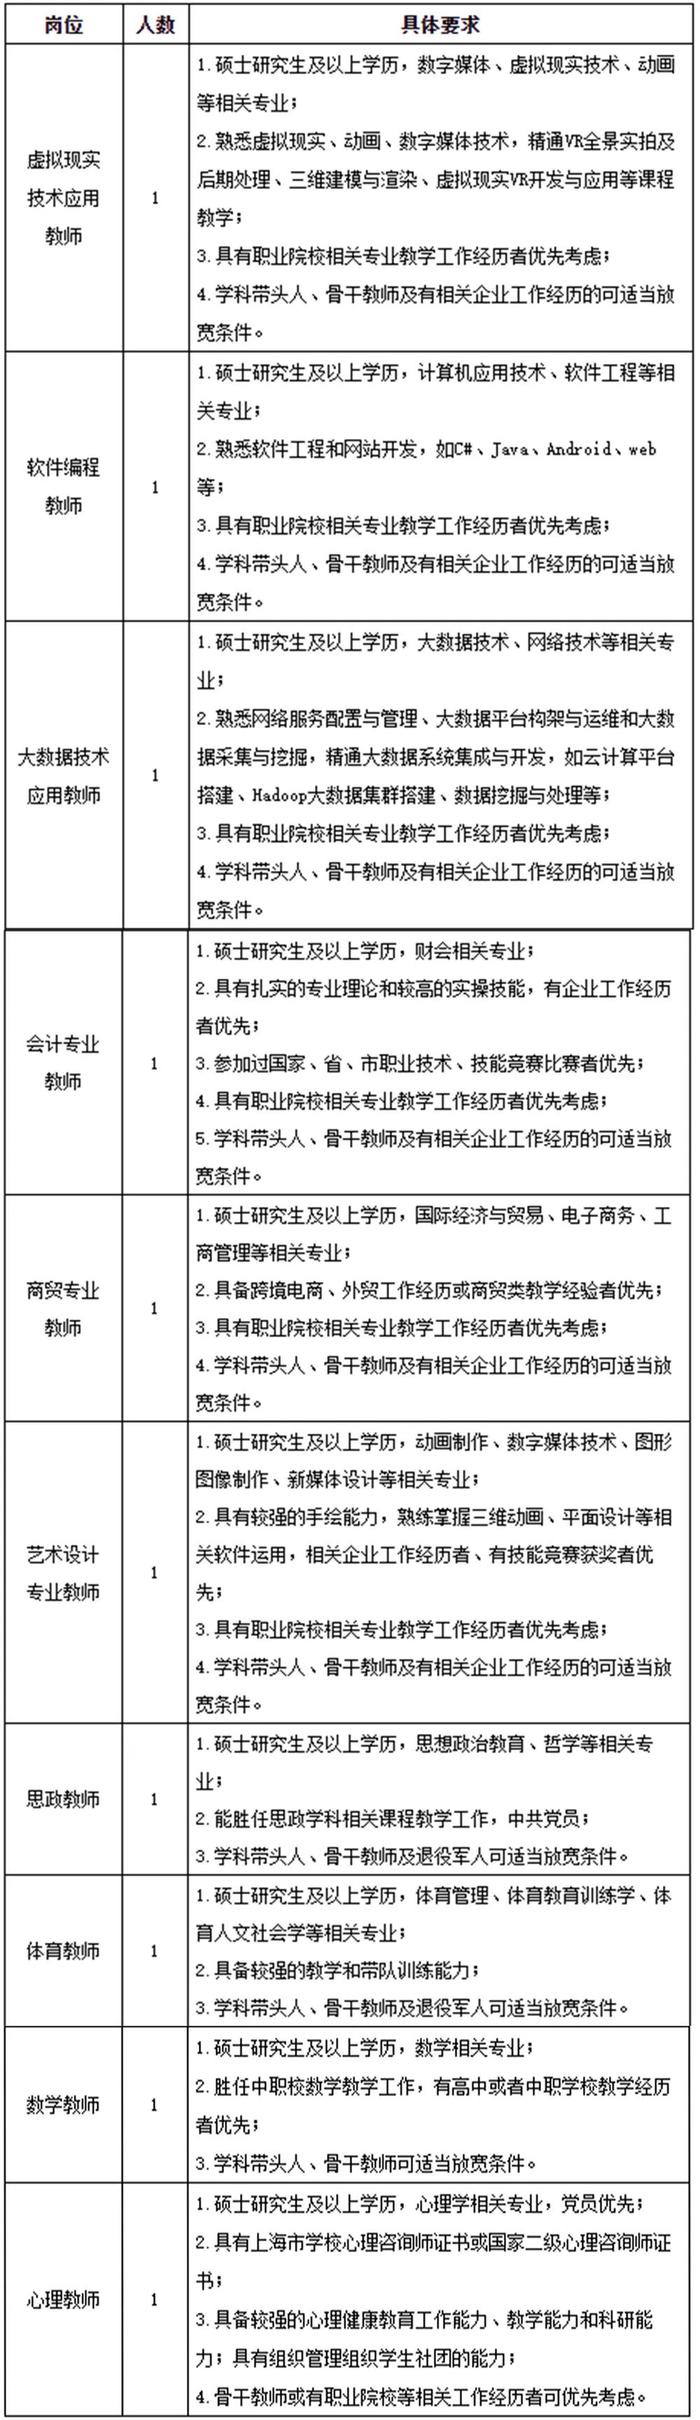 【就业】上海市经济管理学校招聘15名工作人员，7月5日前报名